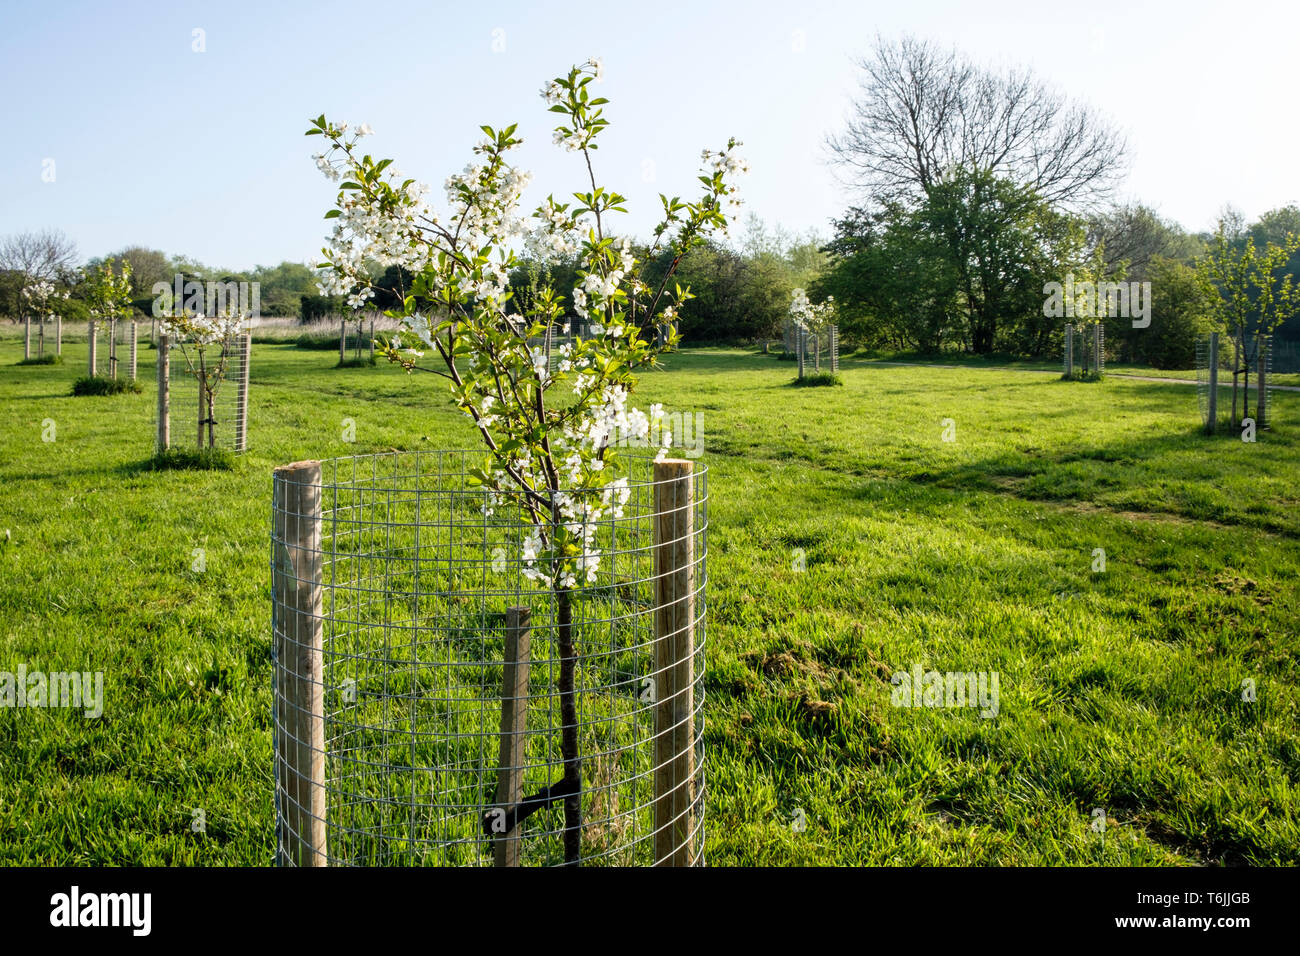 Eine neu gepflanzte junge Kirschbaum in einem Feld zusammen mit verschiedenen anderen Setzlinge. Jeder hat einen Baum Schutz. Nottinghamshire, England, Großbritannien Stockfoto